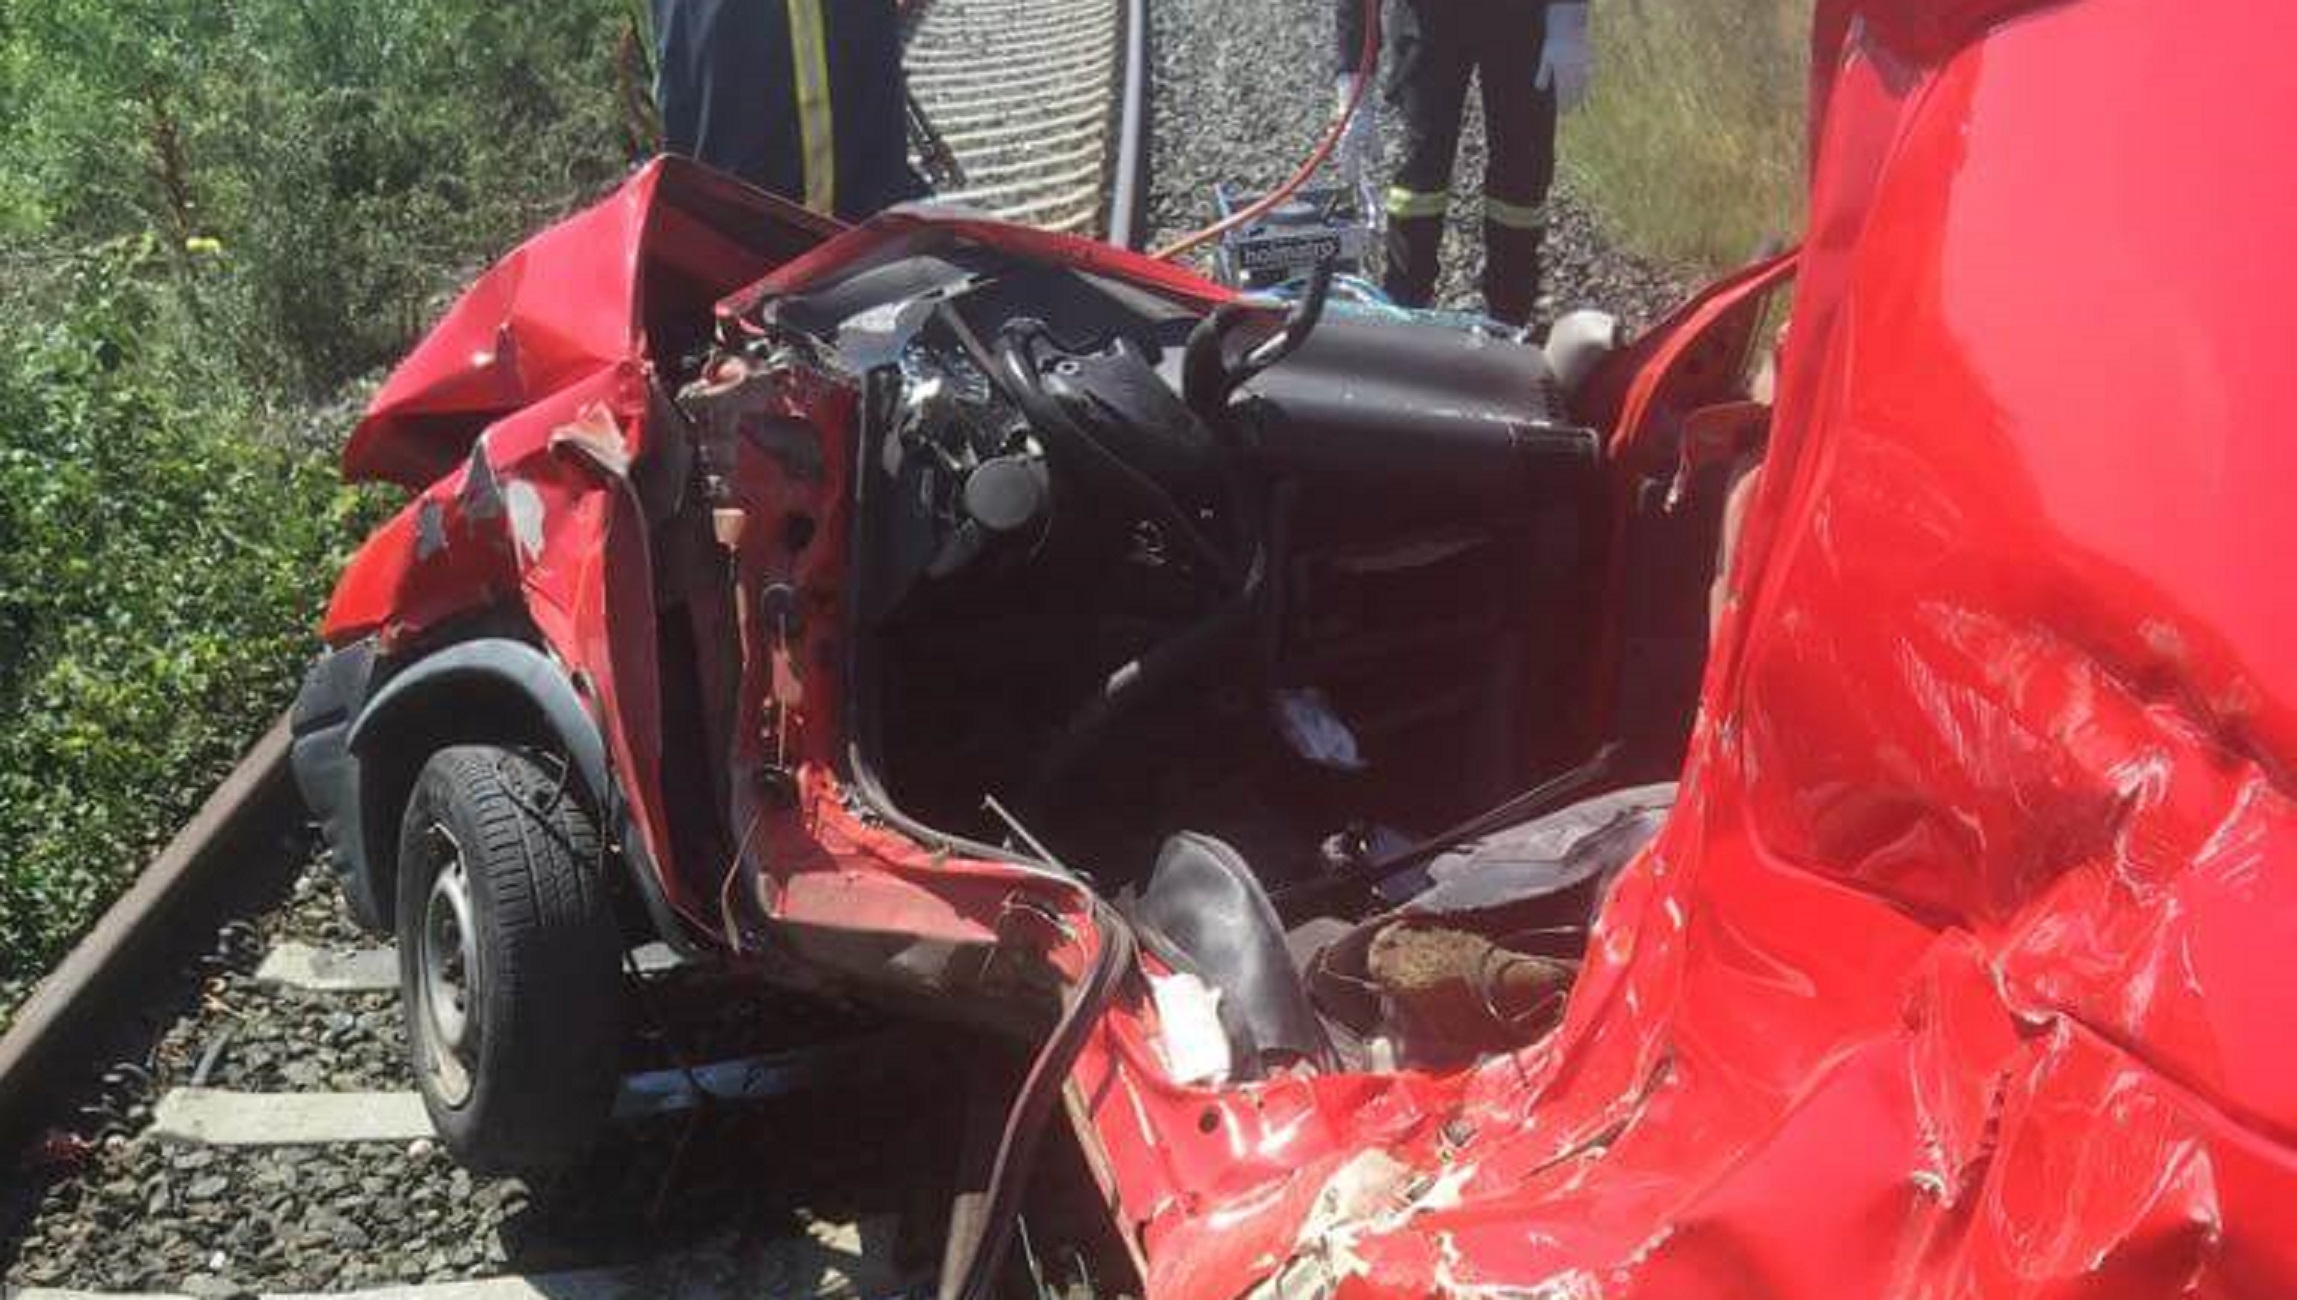 Φλώρινα: Πώς έγινε το ατύχημα με το τρένο – Δύο οι τραυματίες, ο ένας ανήλικος [pics]